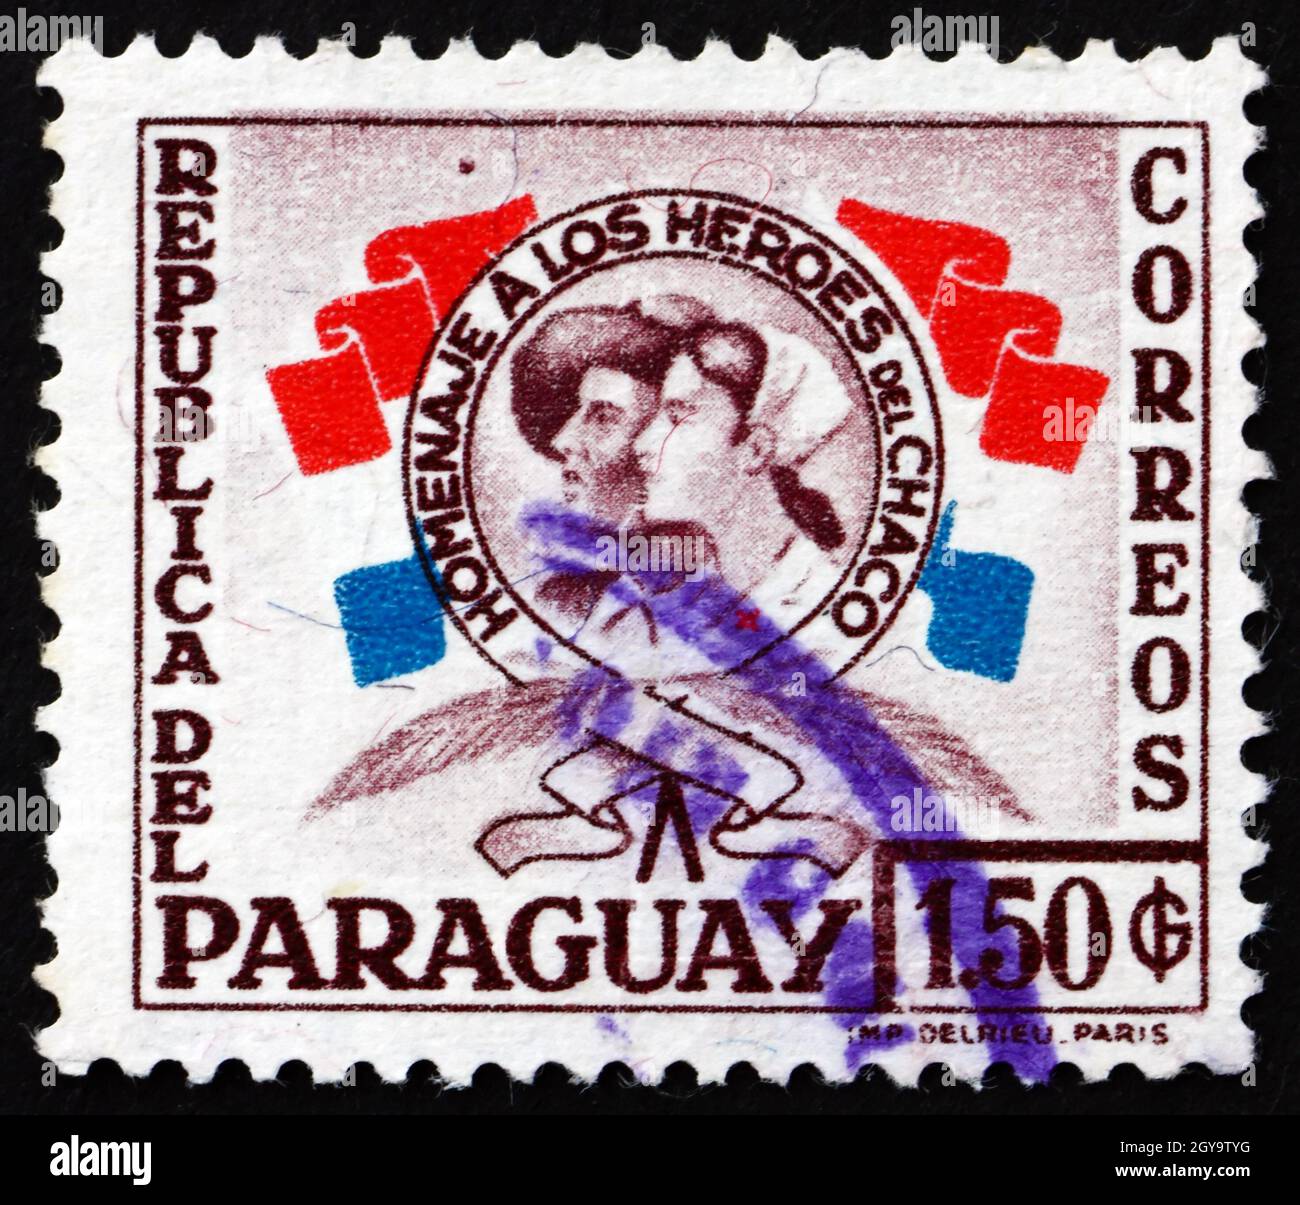 PARAGUAY - ALREDEDOR de 1957: Un sello impreso en Paraguay muestra Héroes de la Guerra del Chaco, alrededor de 1957 Foto de stock